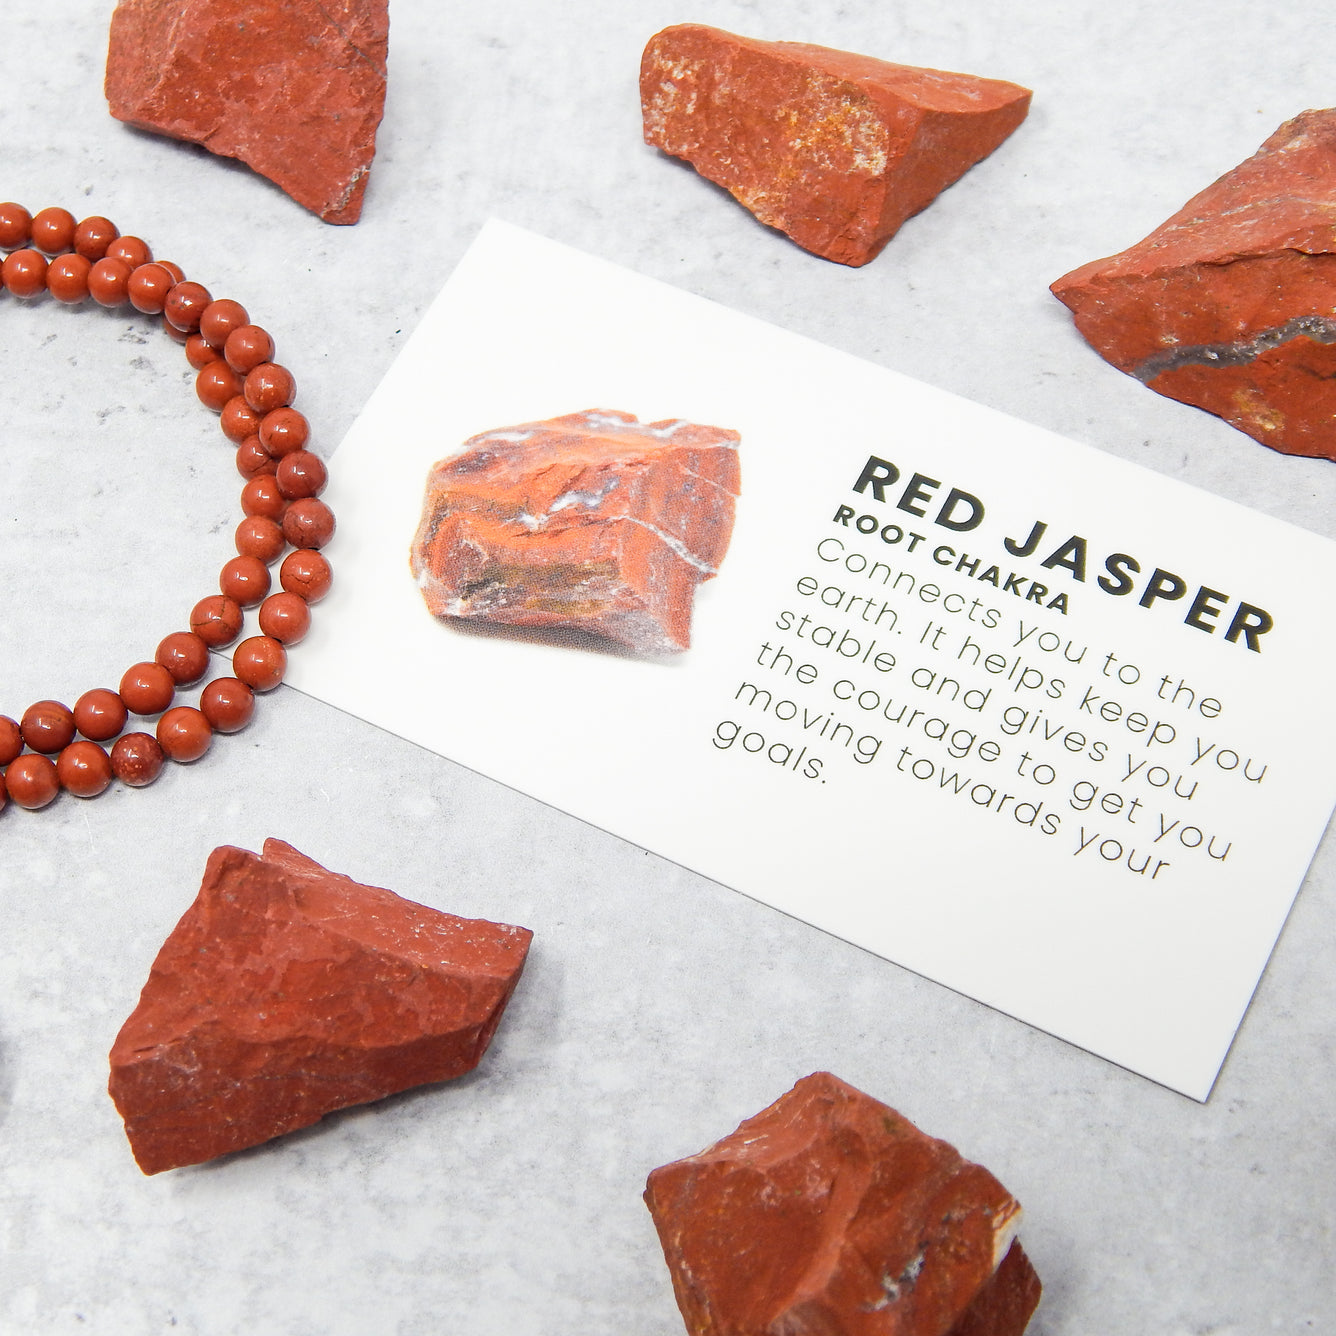 Red Jasper Bracelet